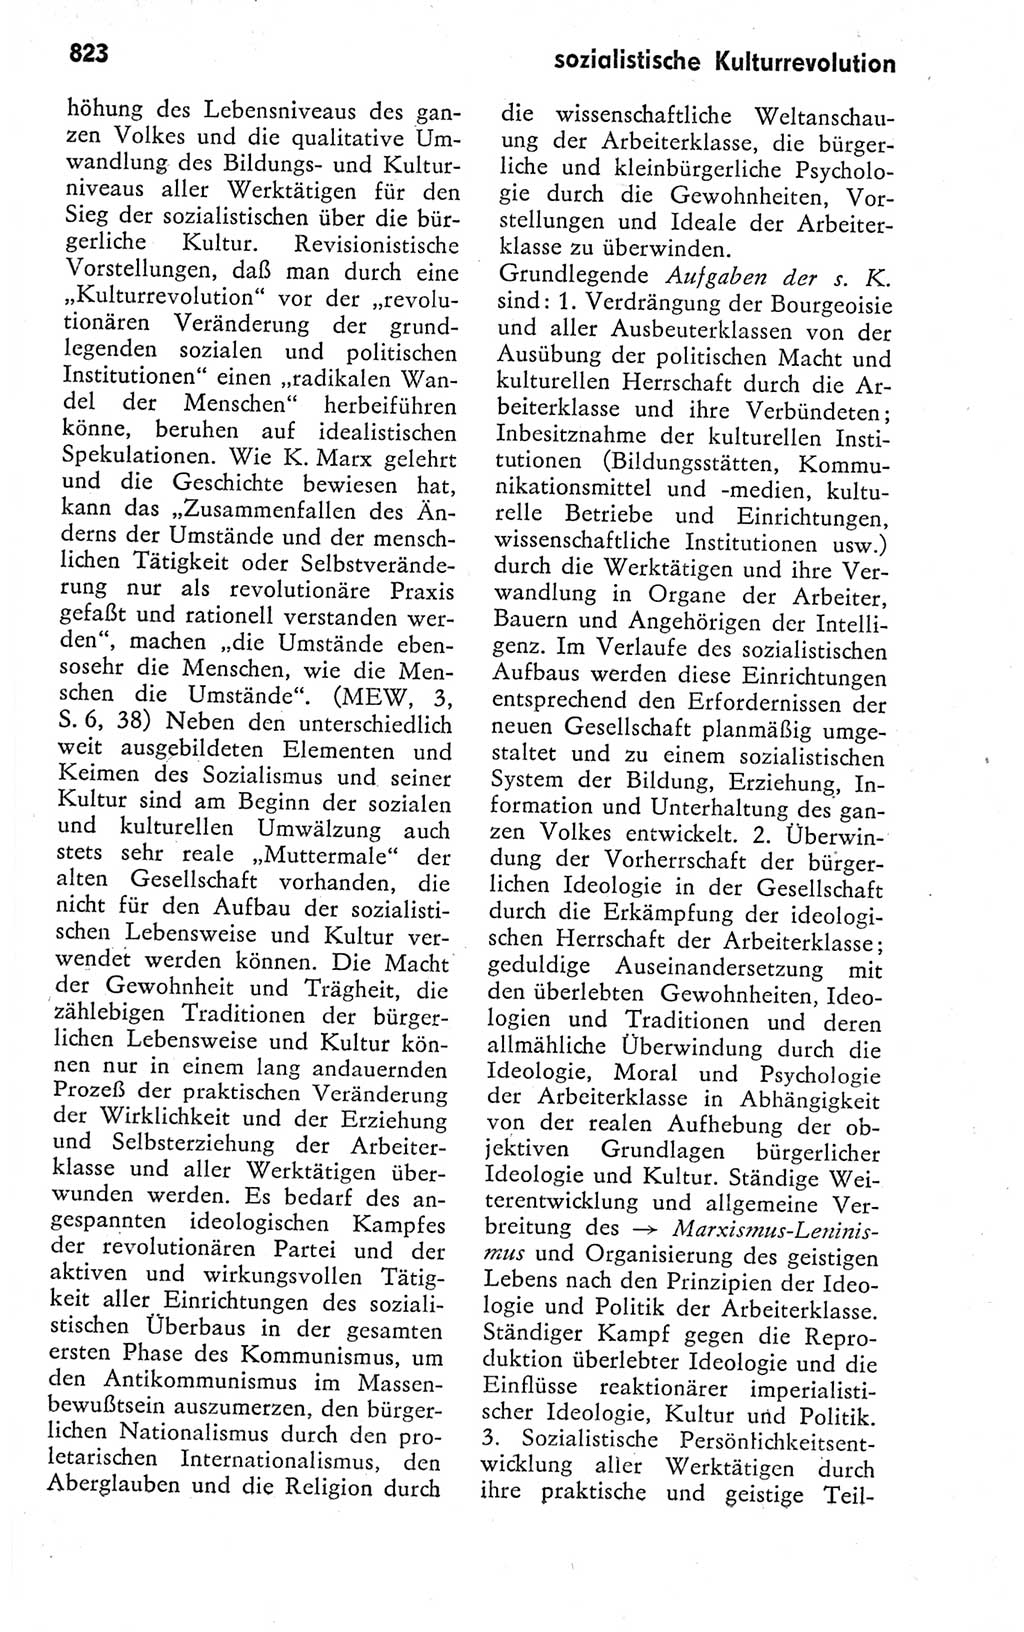 Kleines politisches Wörterbuch [Deutsche Demokratische Republik (DDR)] 1978, Seite 823 (Kl. pol. Wb. DDR 1978, S. 823)